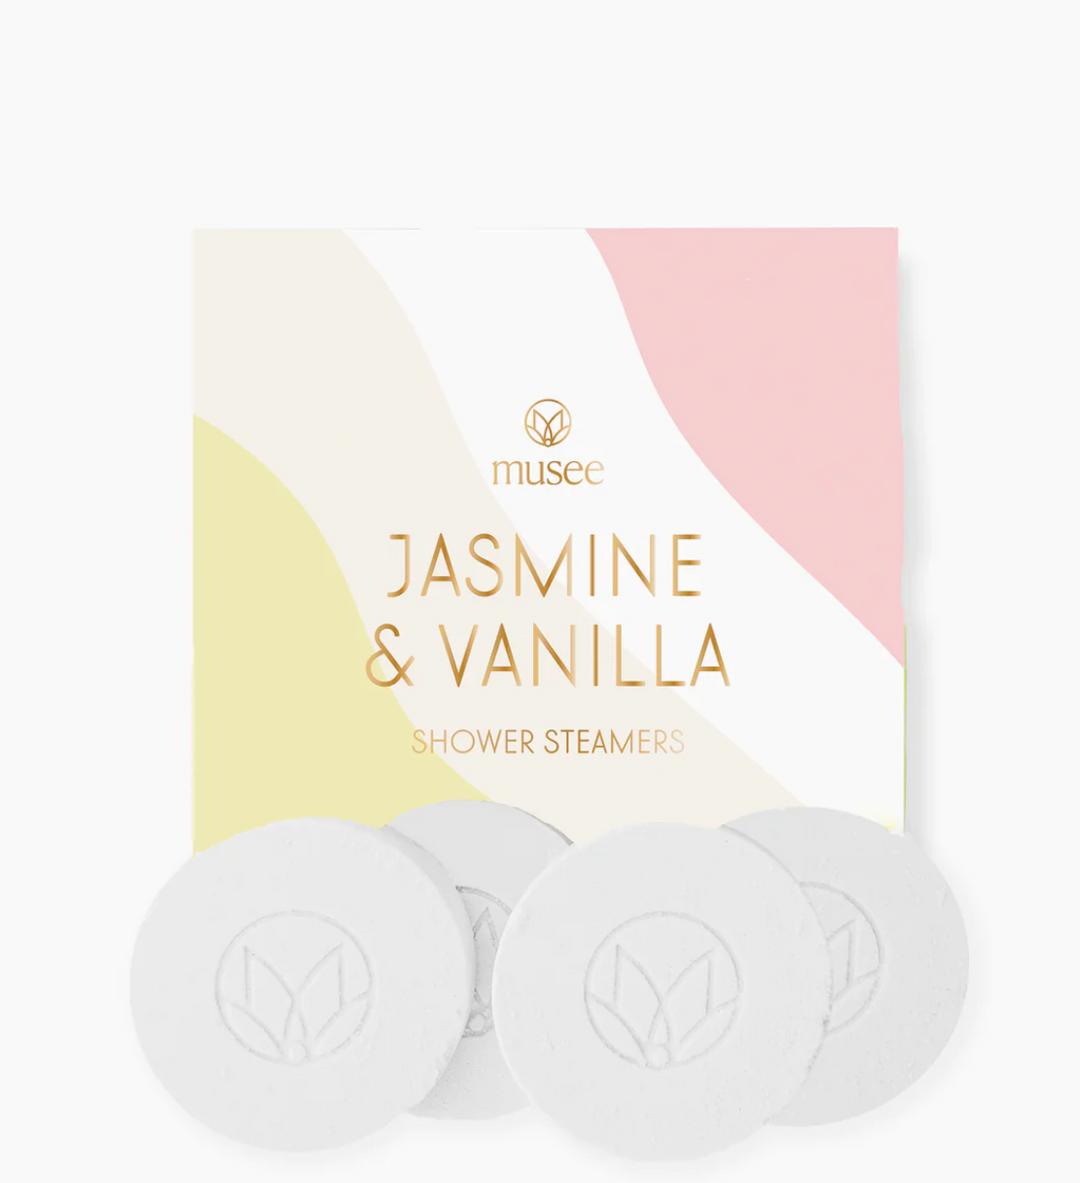 Musee: Jasmine & Vanilla Shower Steamers